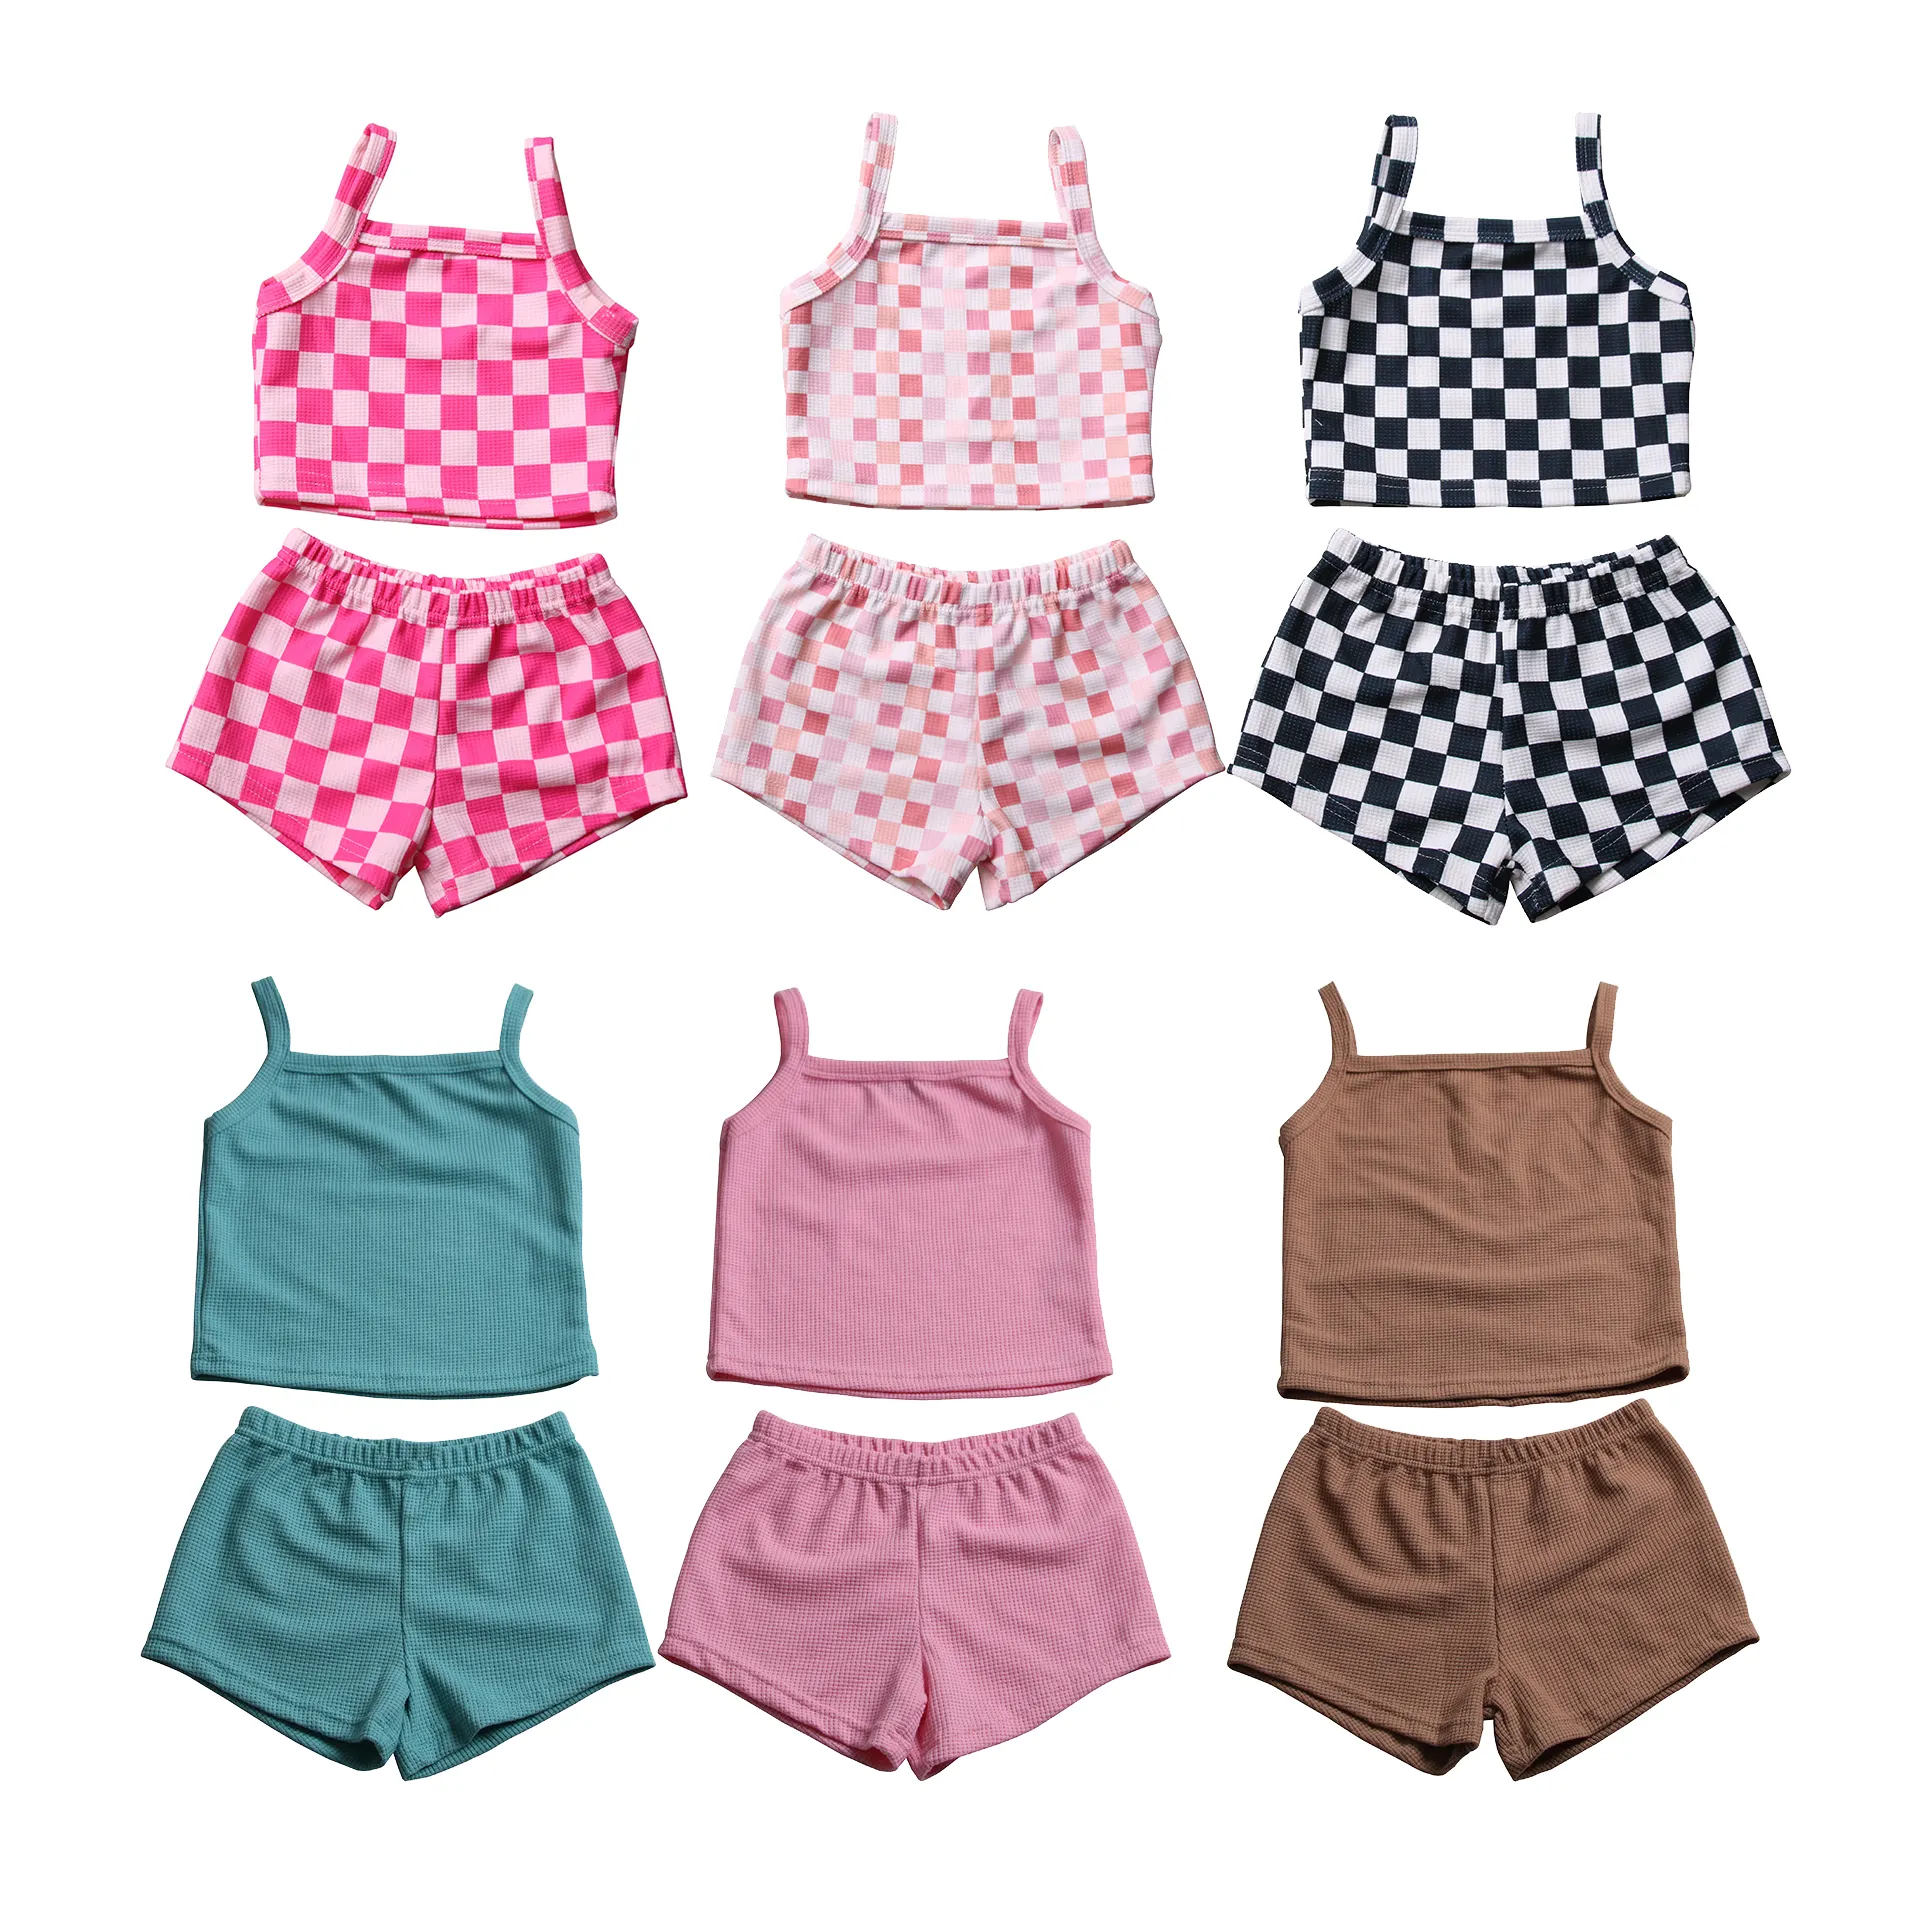 All'ingrosso set di vestiti estivi per bambini in cotone waffle